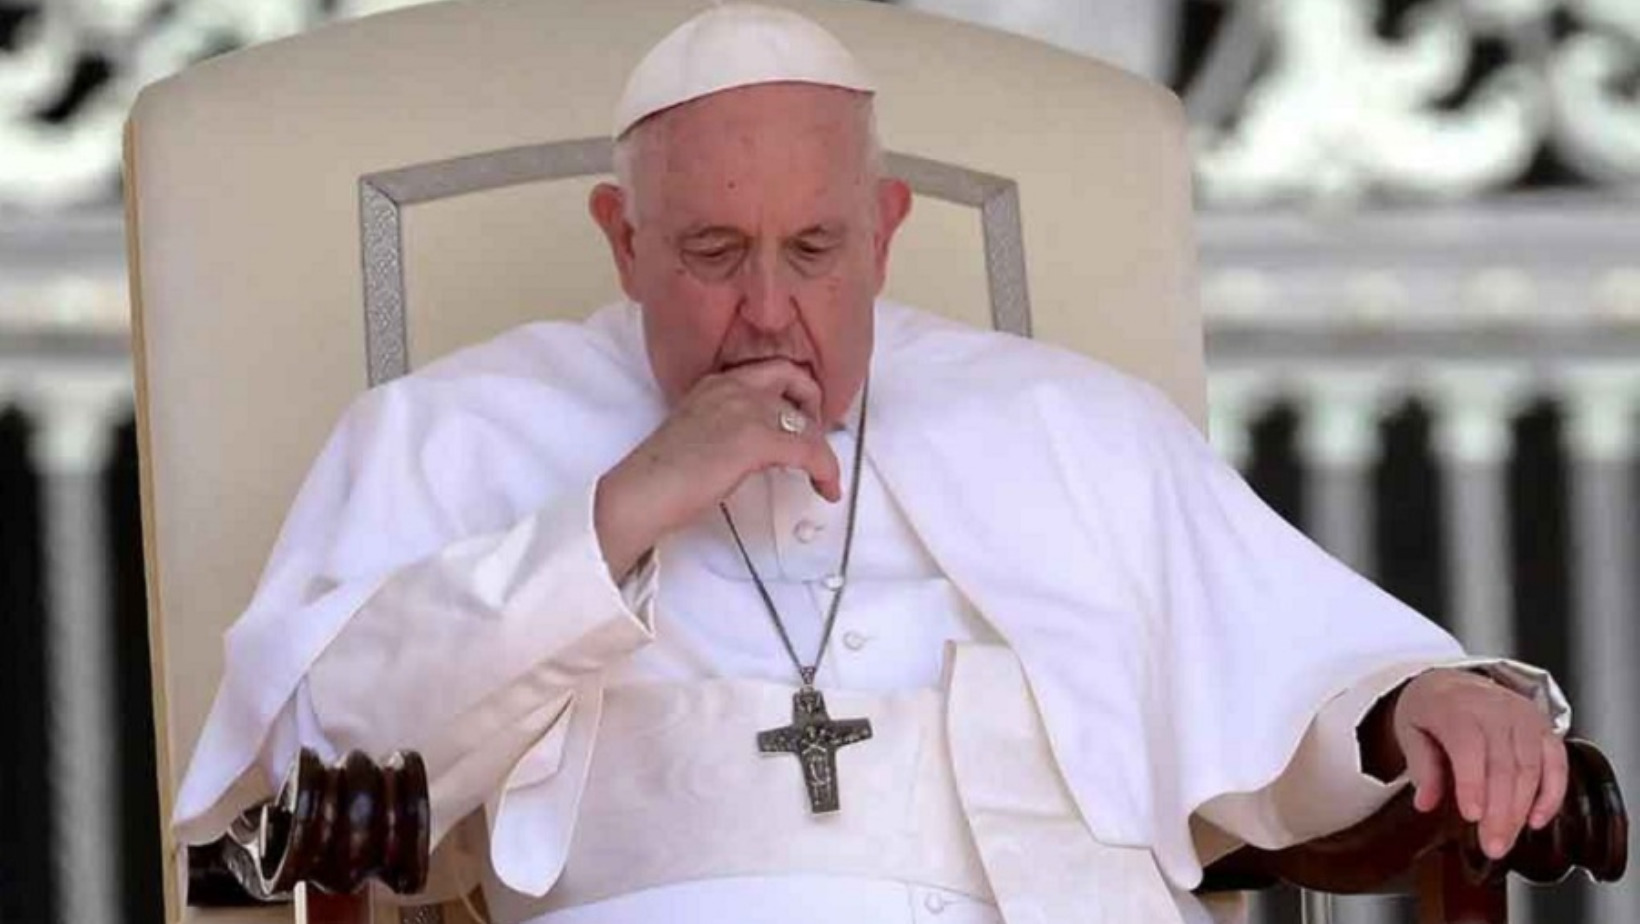 El papa, realiza un llamado a la paz en estos tiempos "particularmente oscuros". Foto: Fuente externa